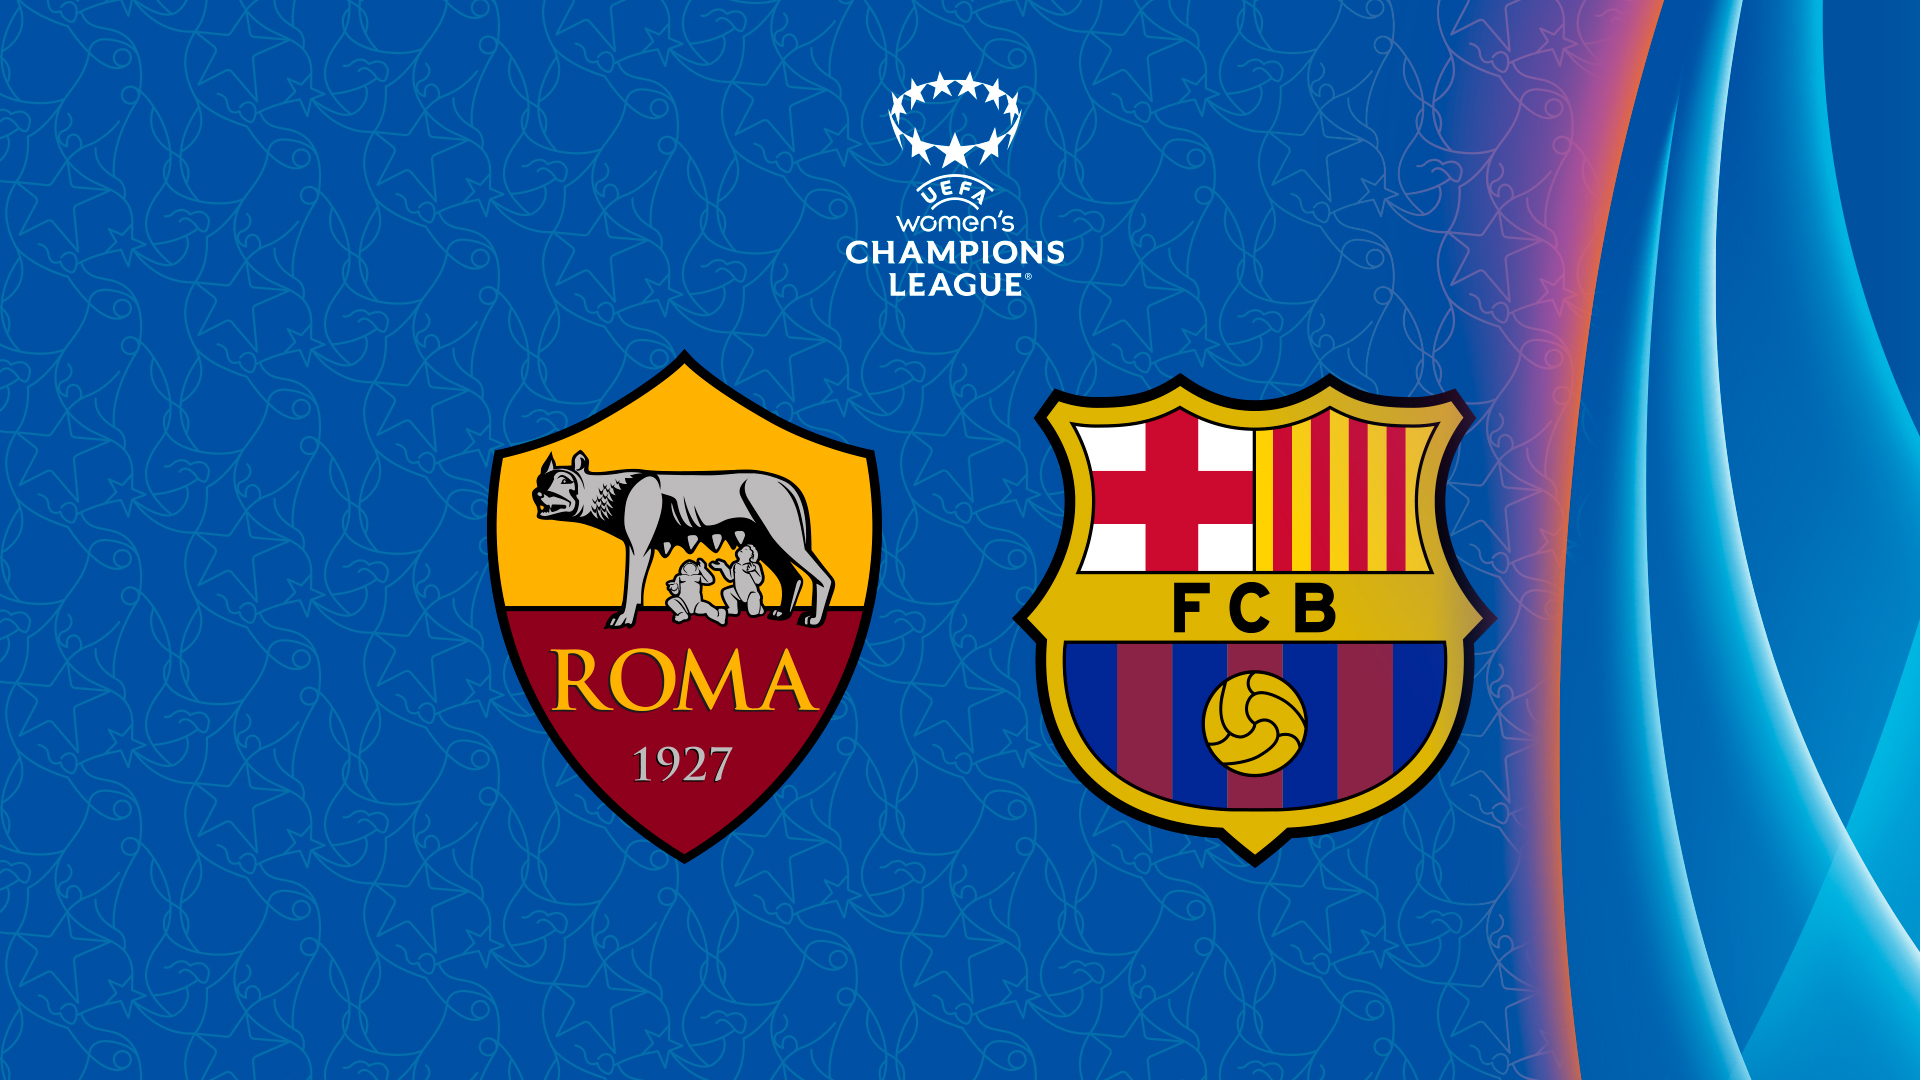 Roma vs fc barcelona